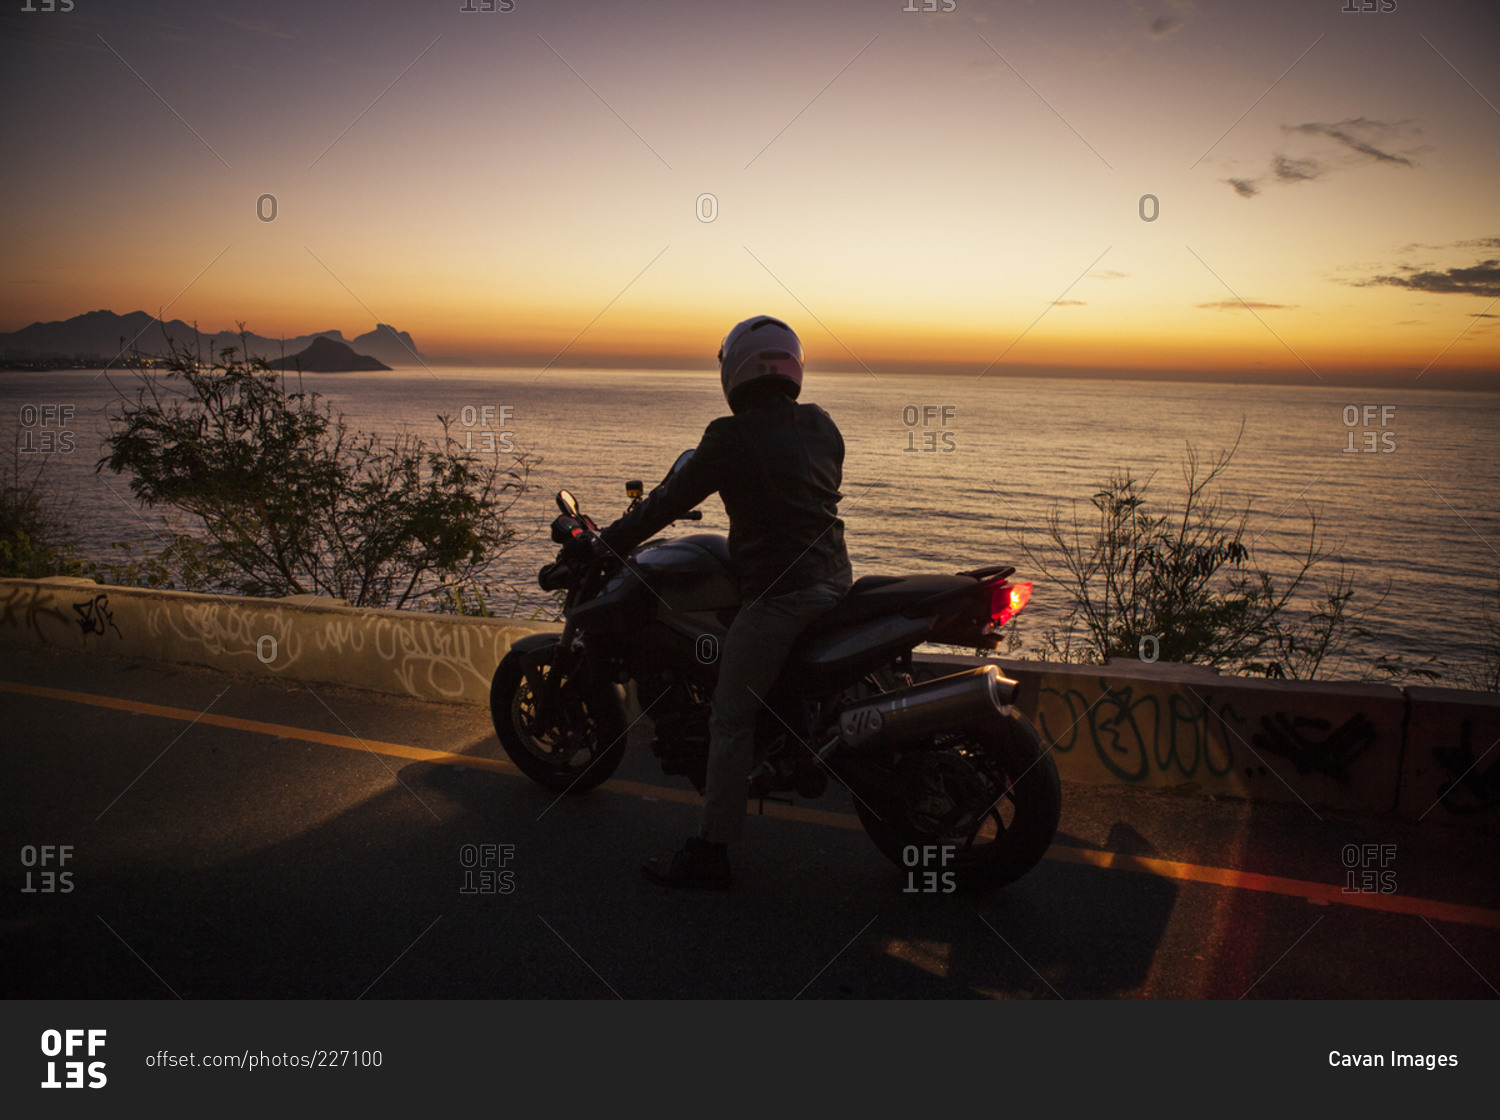 Man on motorcycle by ocean